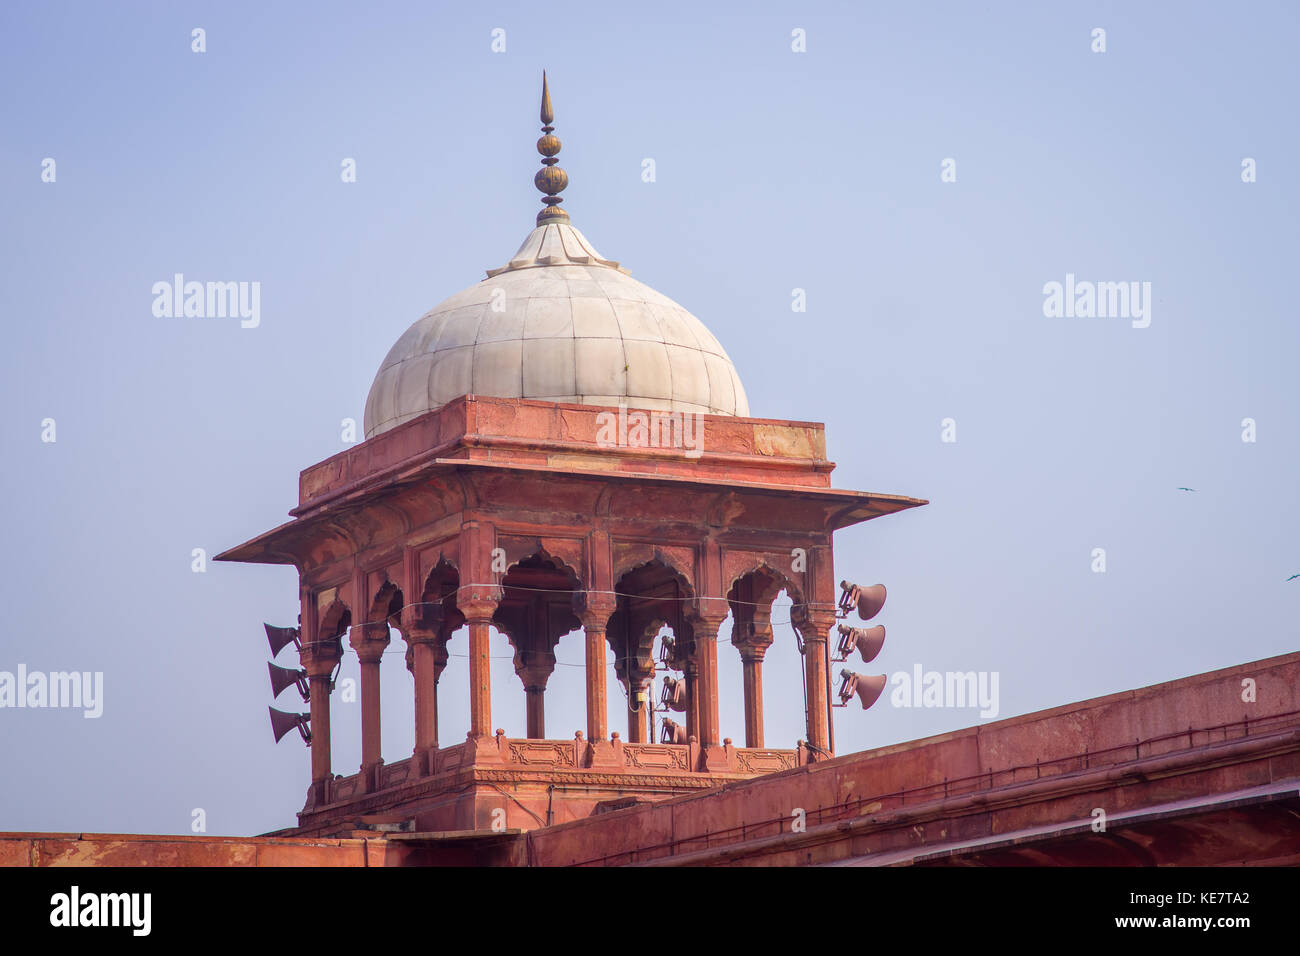 Delhi, Inde - le 27 septembre 2017 : la vue sur le dôme des personnes non identifiées, marcher en face d'un merveilleux temple Jama Masjid, c'est la plus grande mosquée musulmane en Inde. Delhi, Inde, effet oeil de poisson Banque D'Images